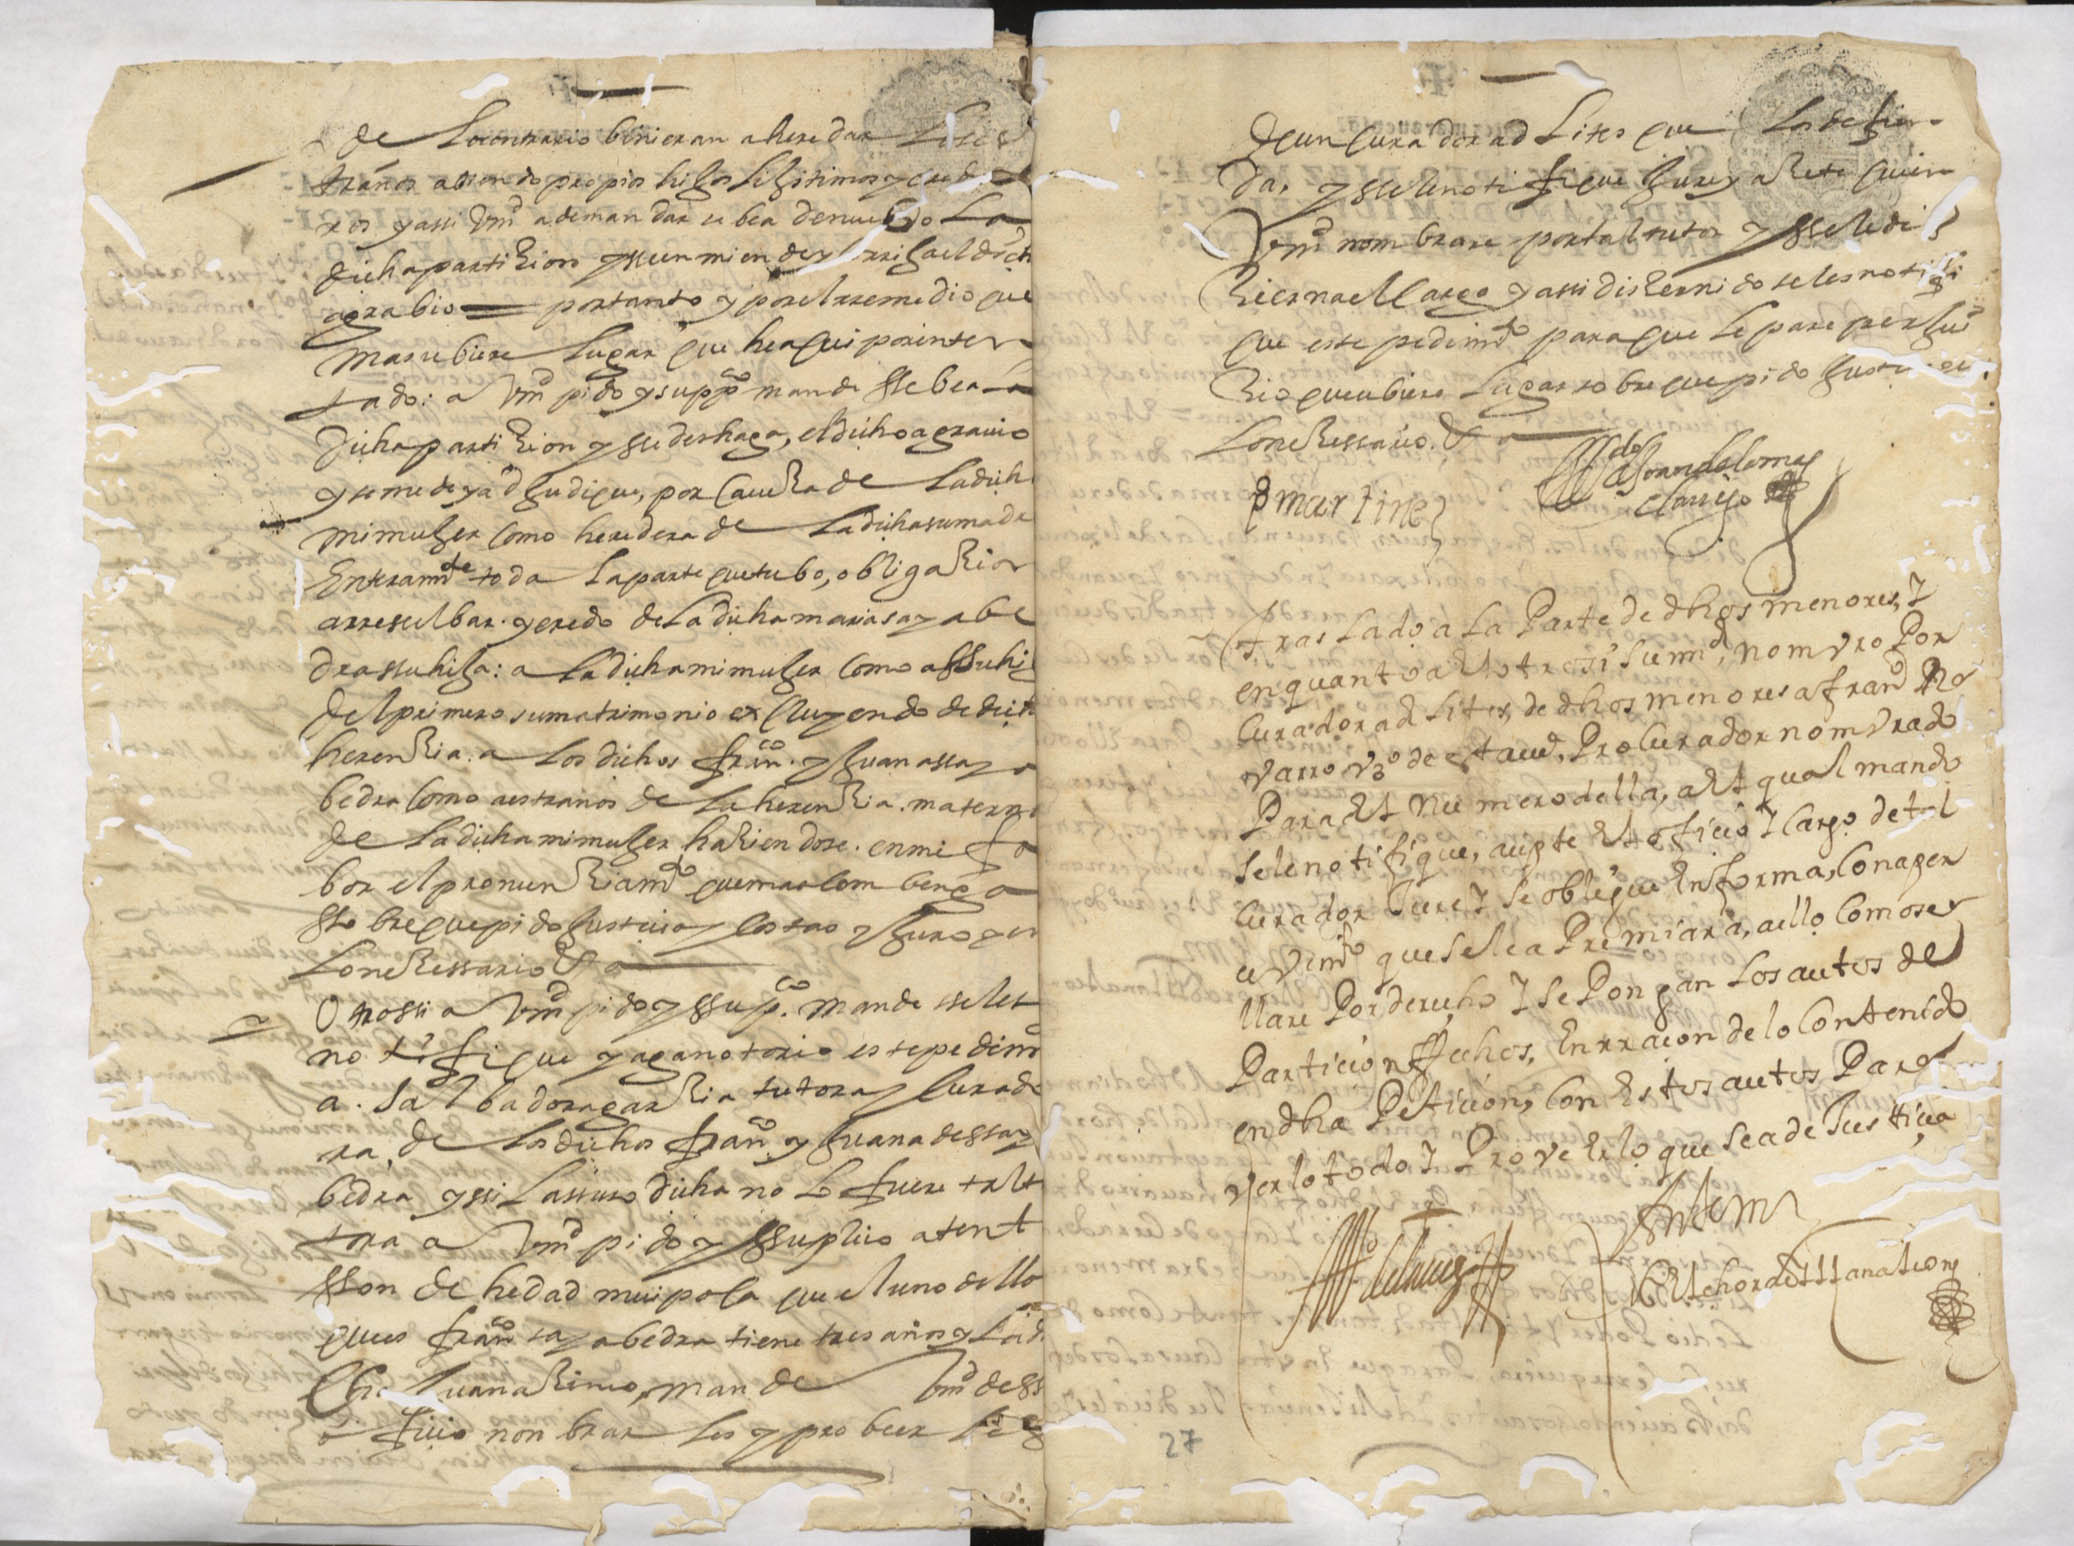 Registro de inventarios y particiones de bienes, Alcantarilla. Años 1627-1653.